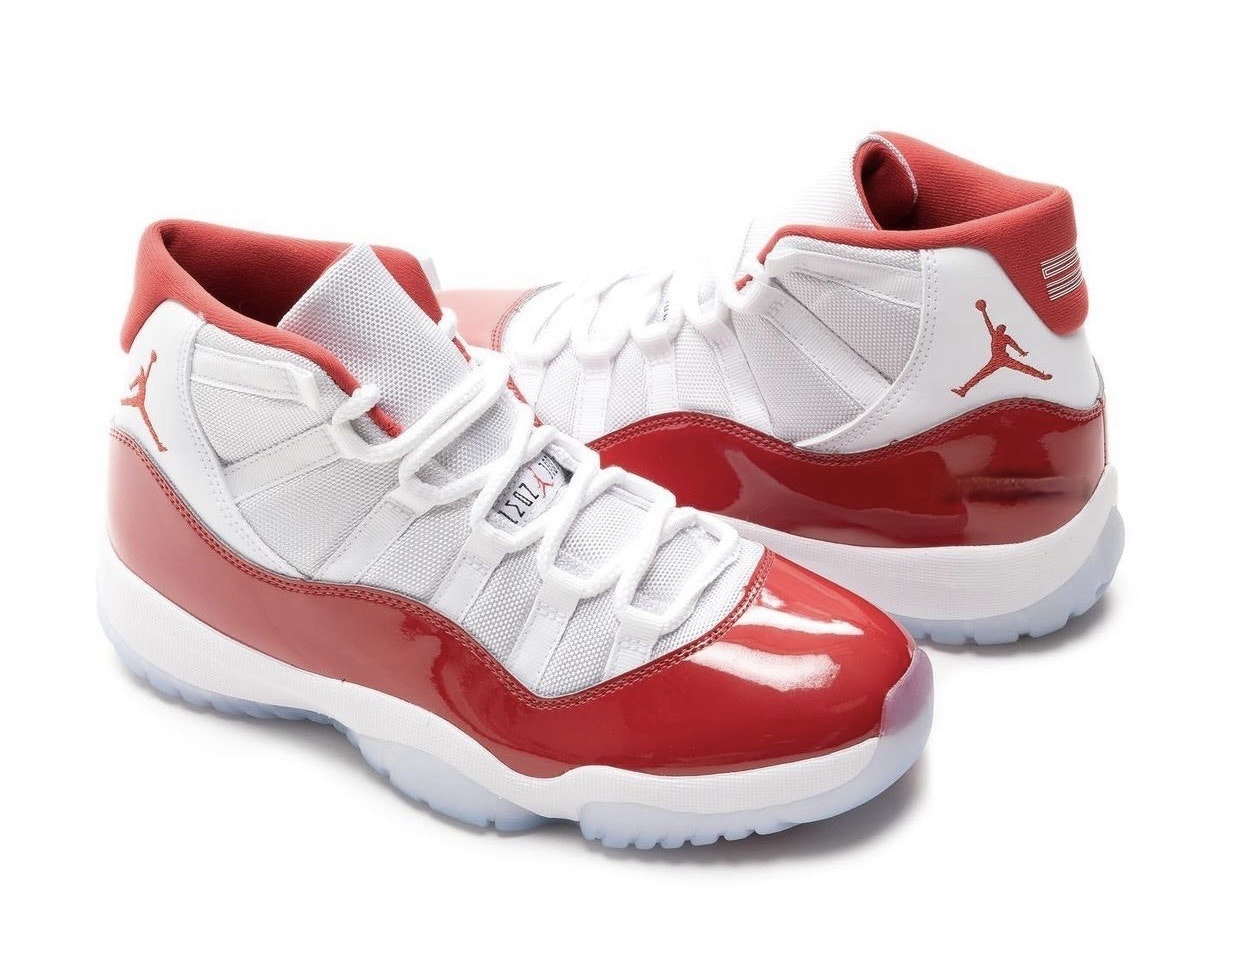 Air Jordan 11 "Cherry" 